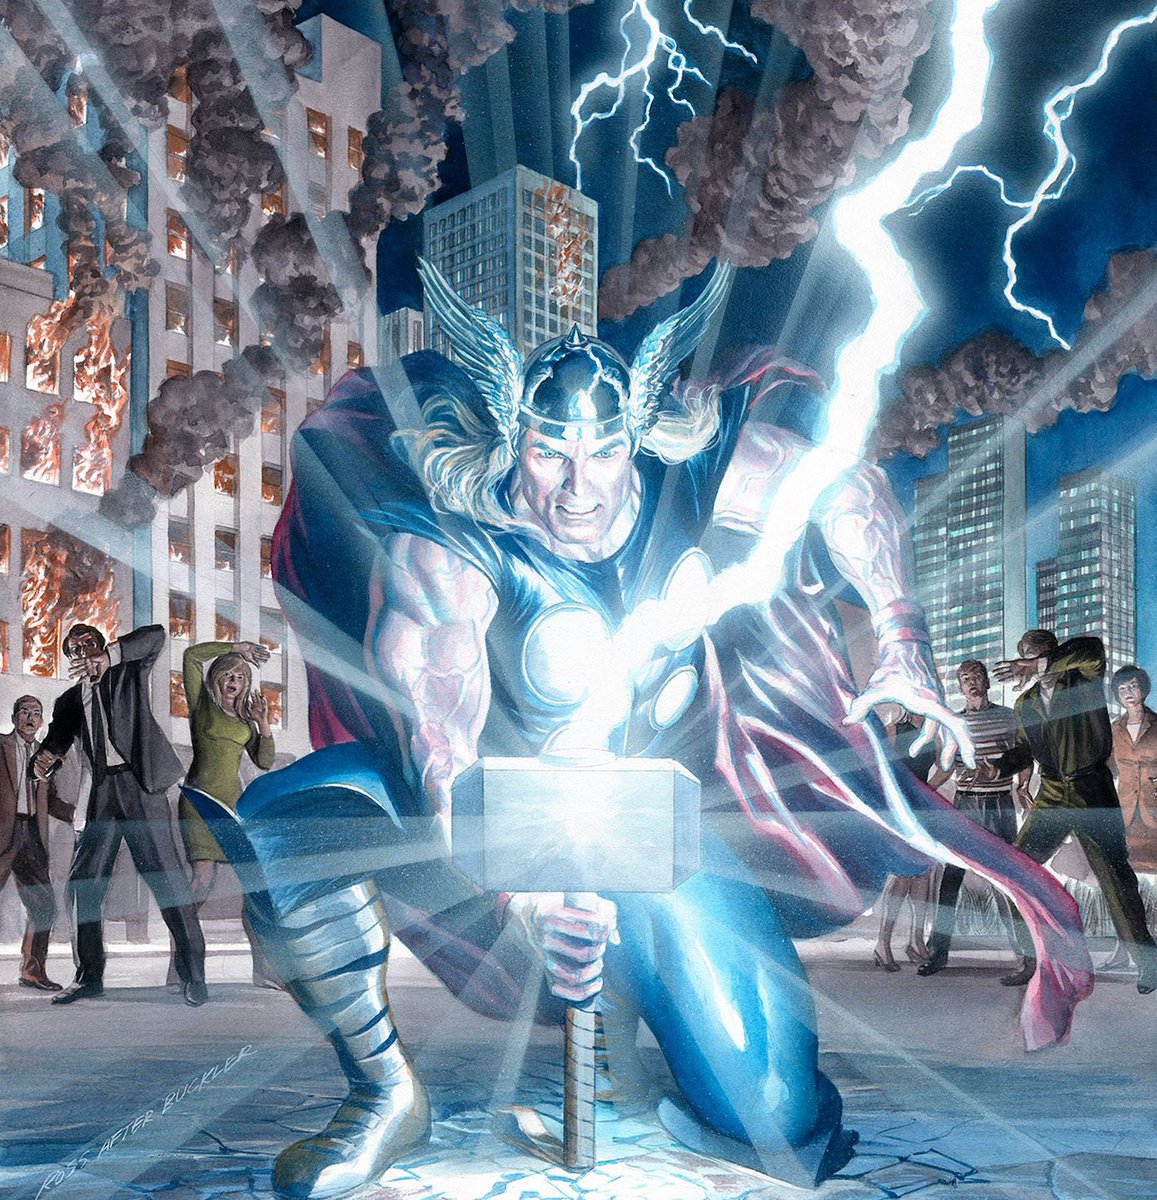 RT @thealexrossart: Mighty Thor #701  #thor #marvel #comicbooks #coverart https://t.co/OTD0vgdupz